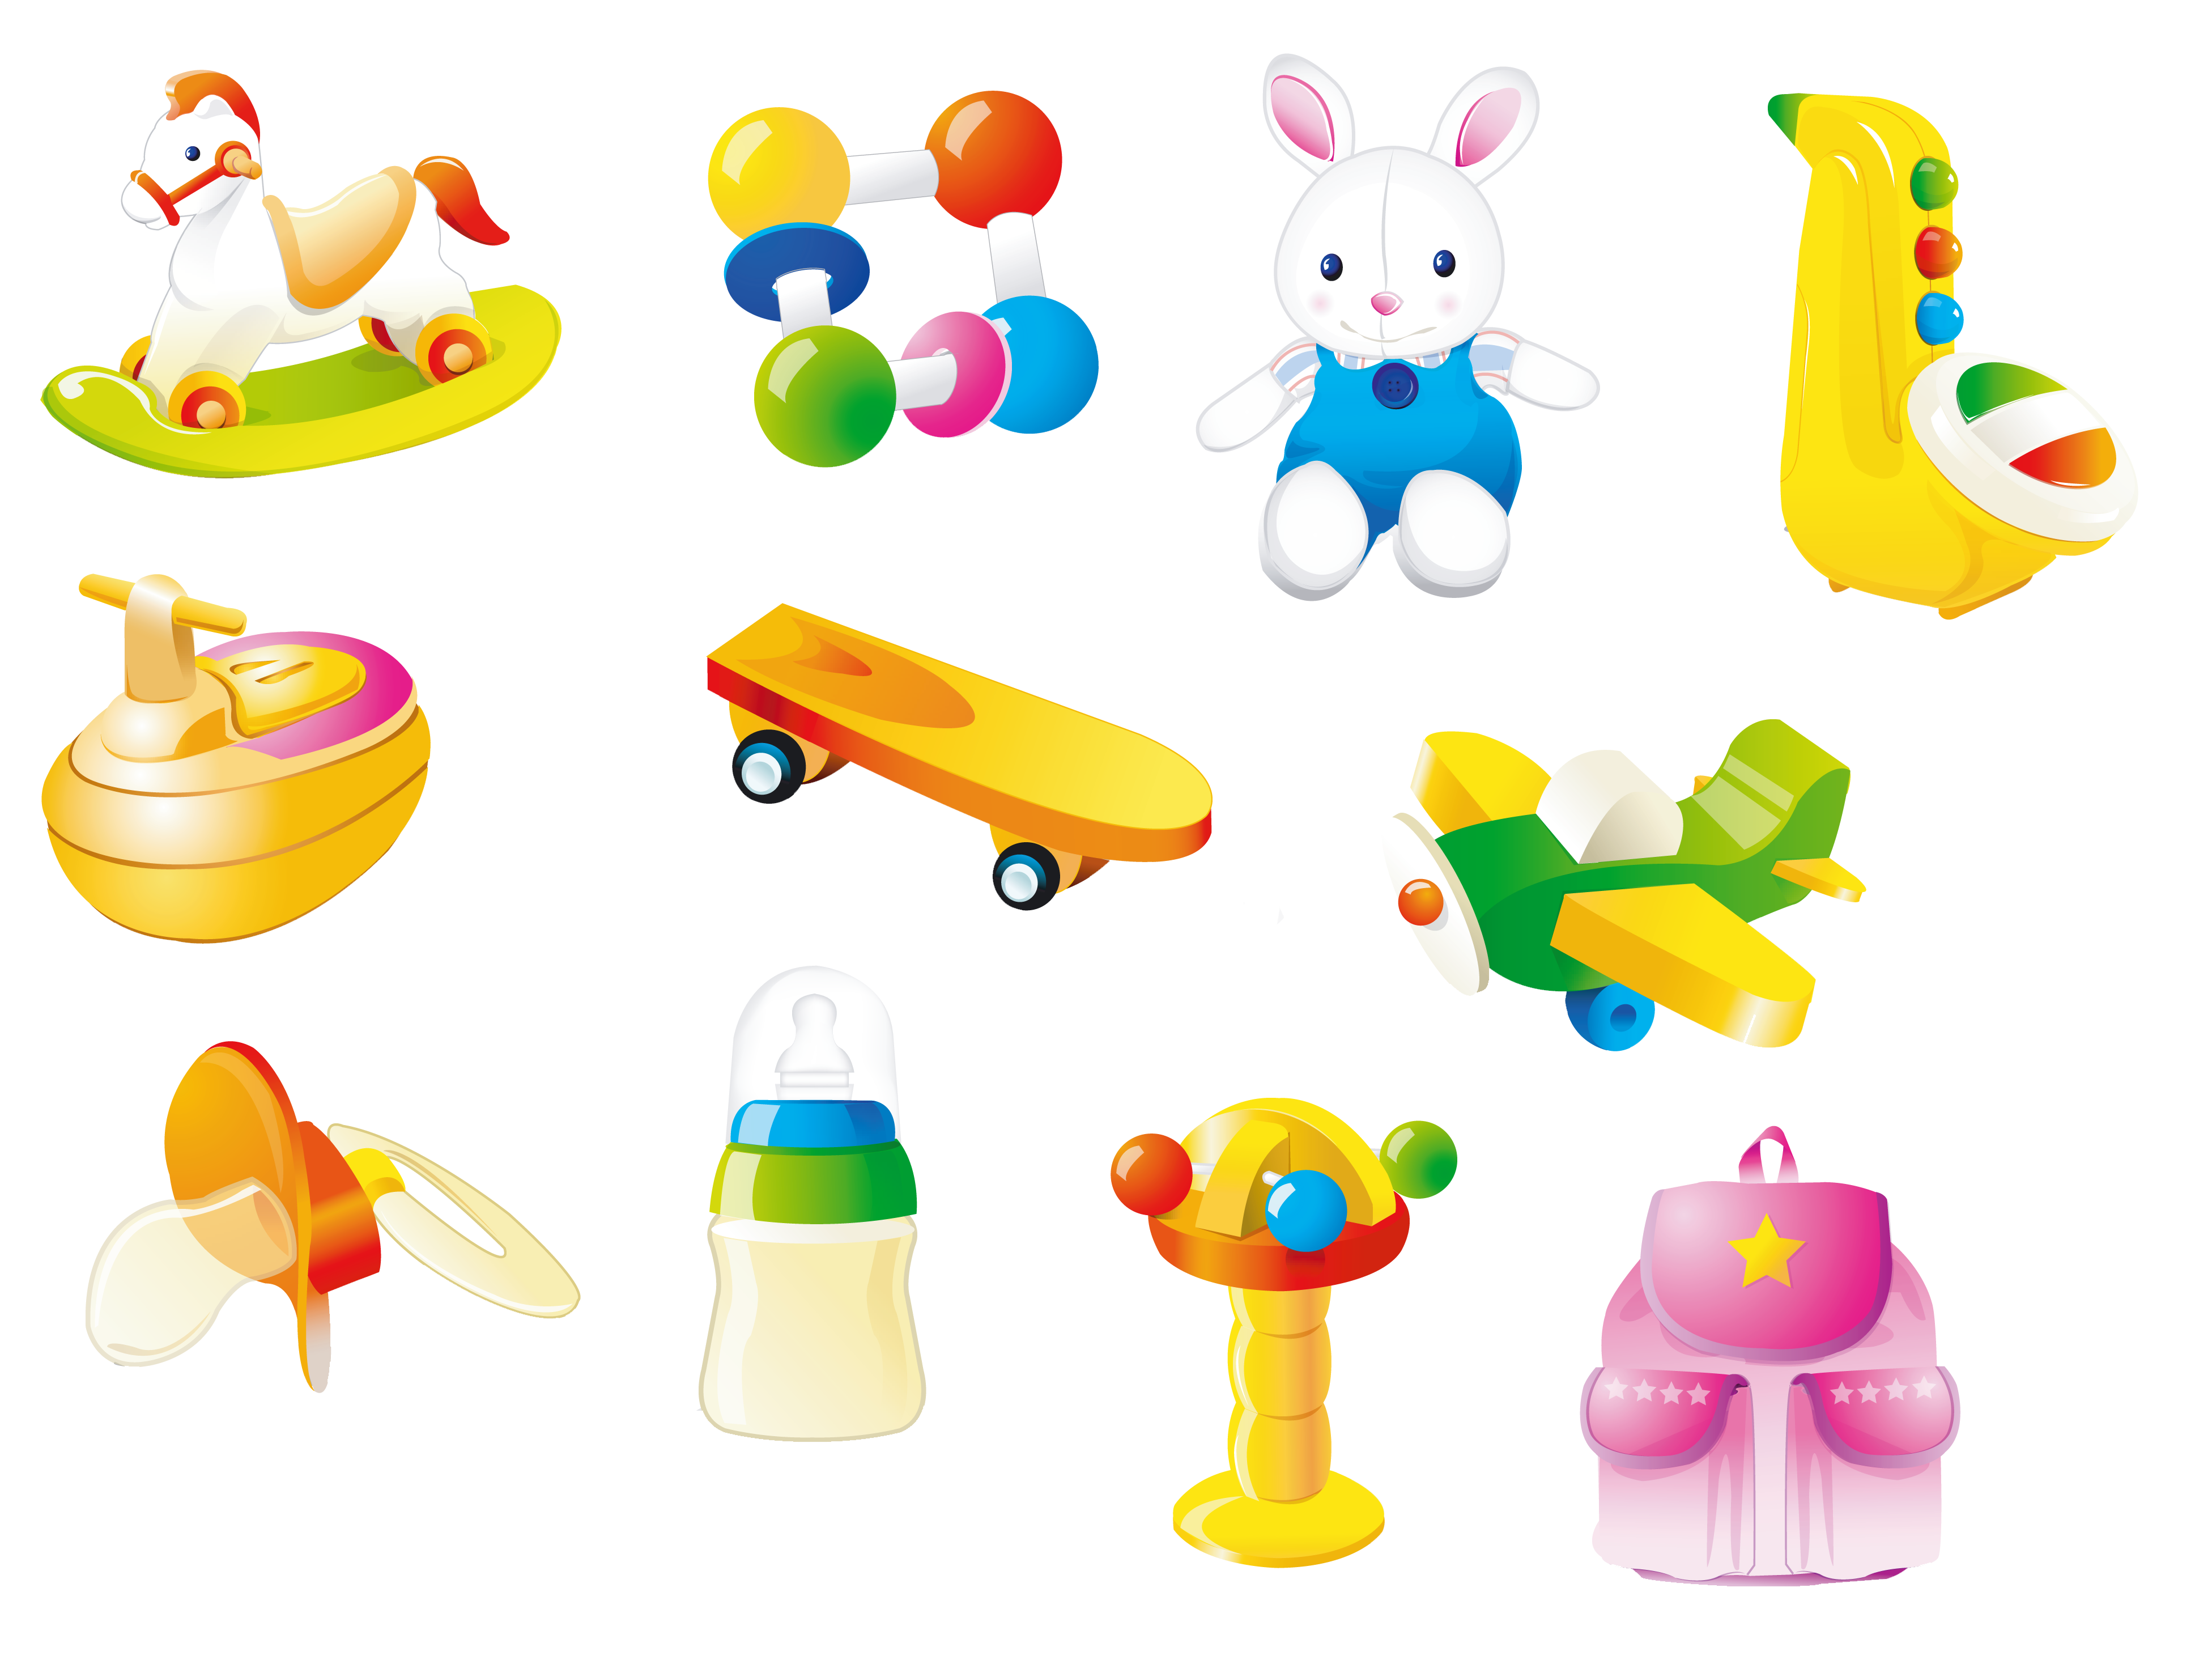 Toy картинка. Детские игрушки. Разные игрушки для детей. Детские игрушки на прозрачном фоне. Игрушки без фона.